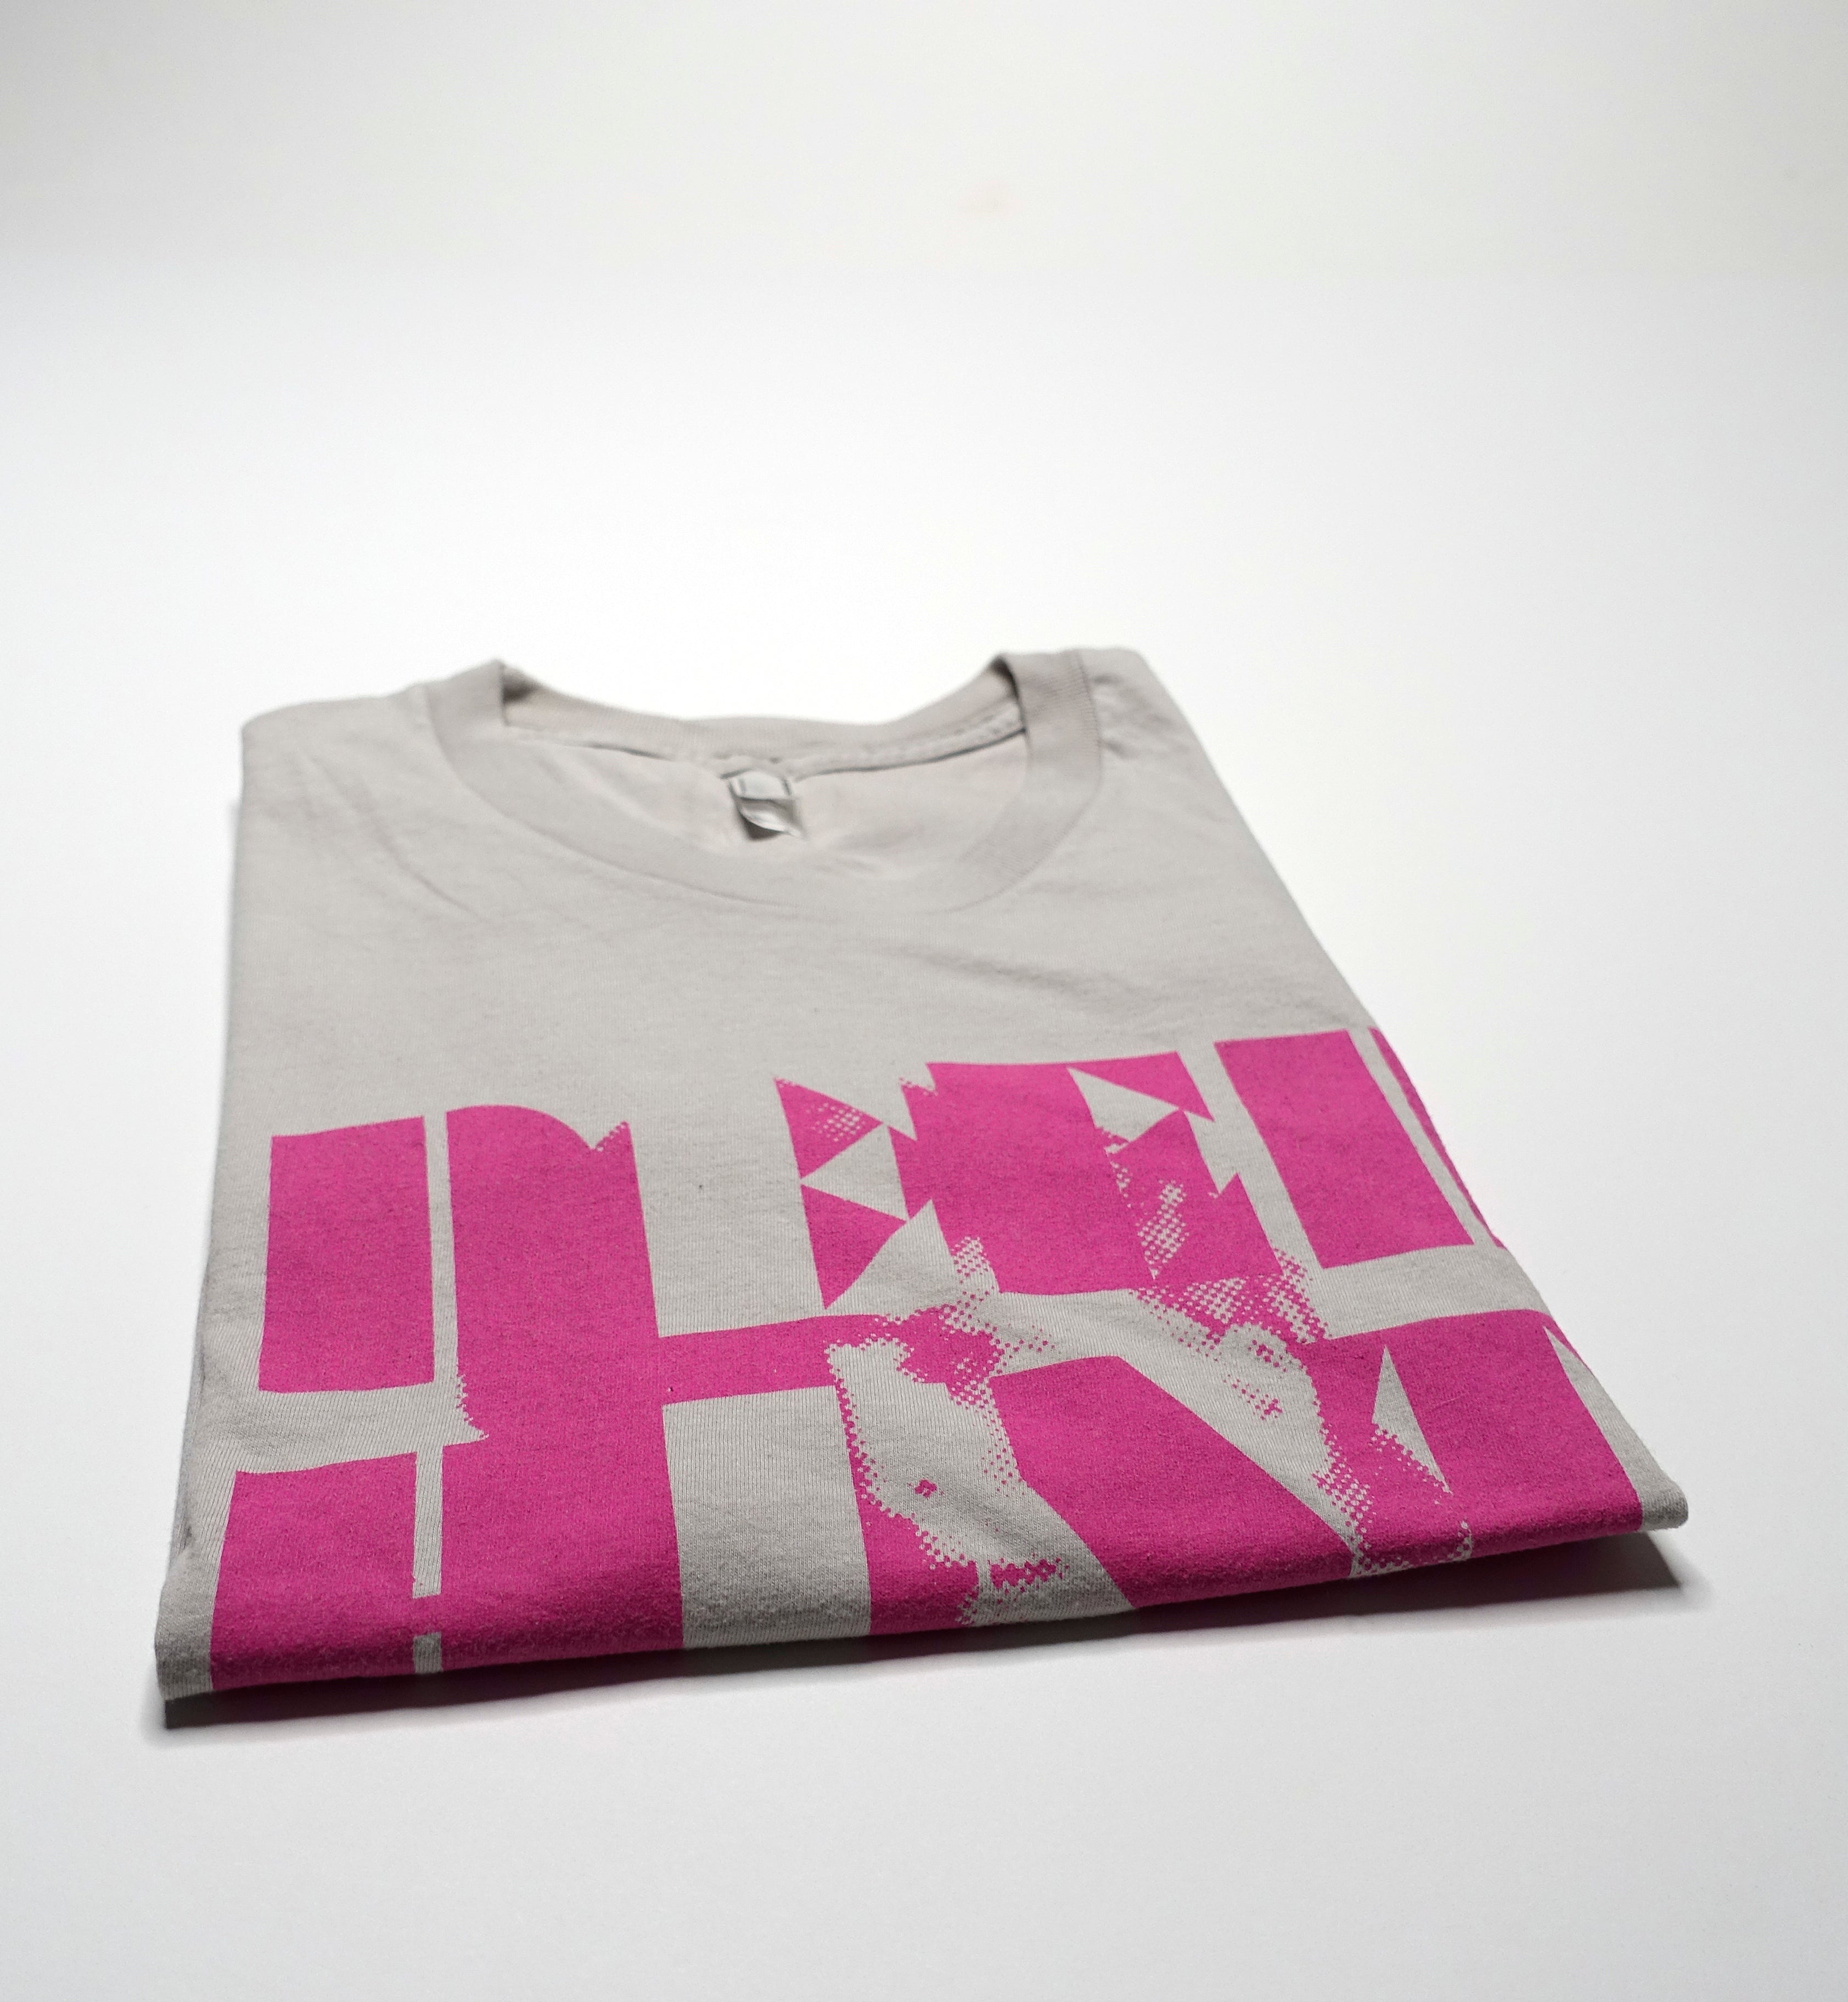 Deerhunter - Cryptograms 2007 Tour Shirt Size XL (Grey)